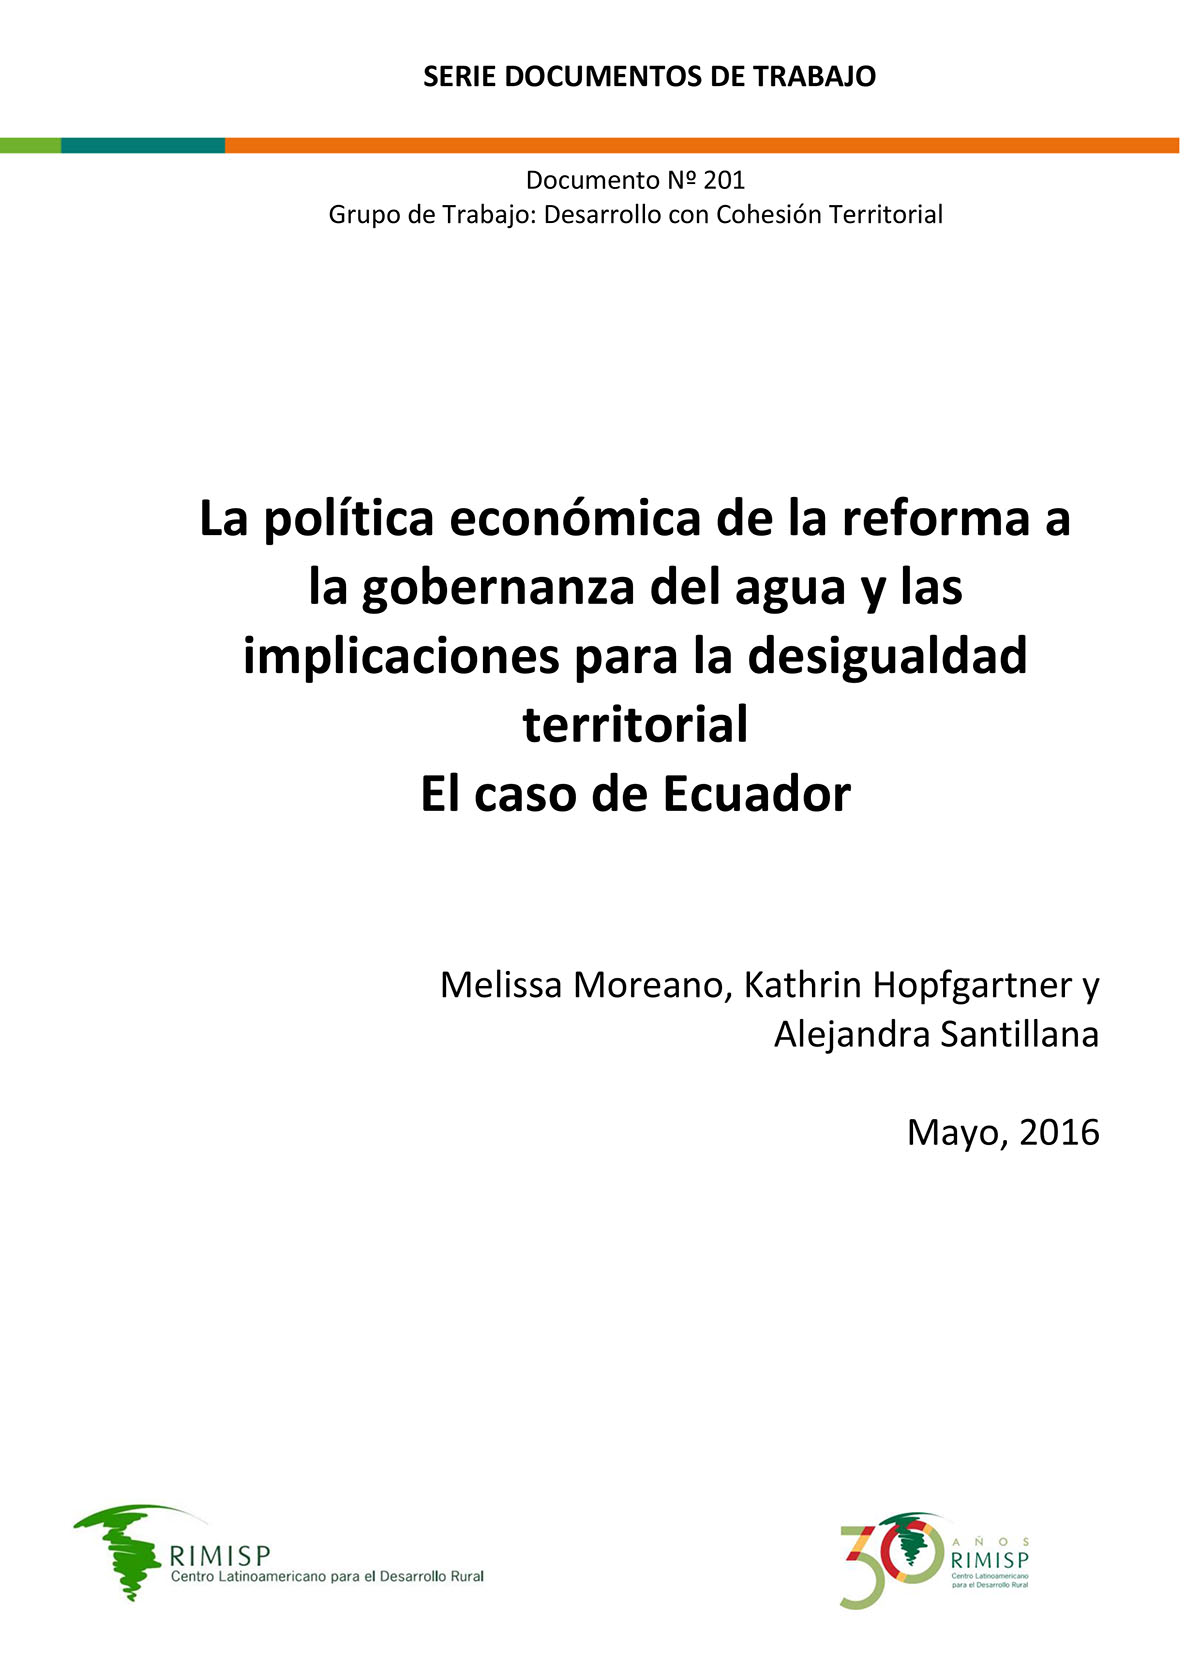 La política económica de la reforma a la gobernanza del agua y las implicaciones para la desigualdad territorial - El caso de Ecuador